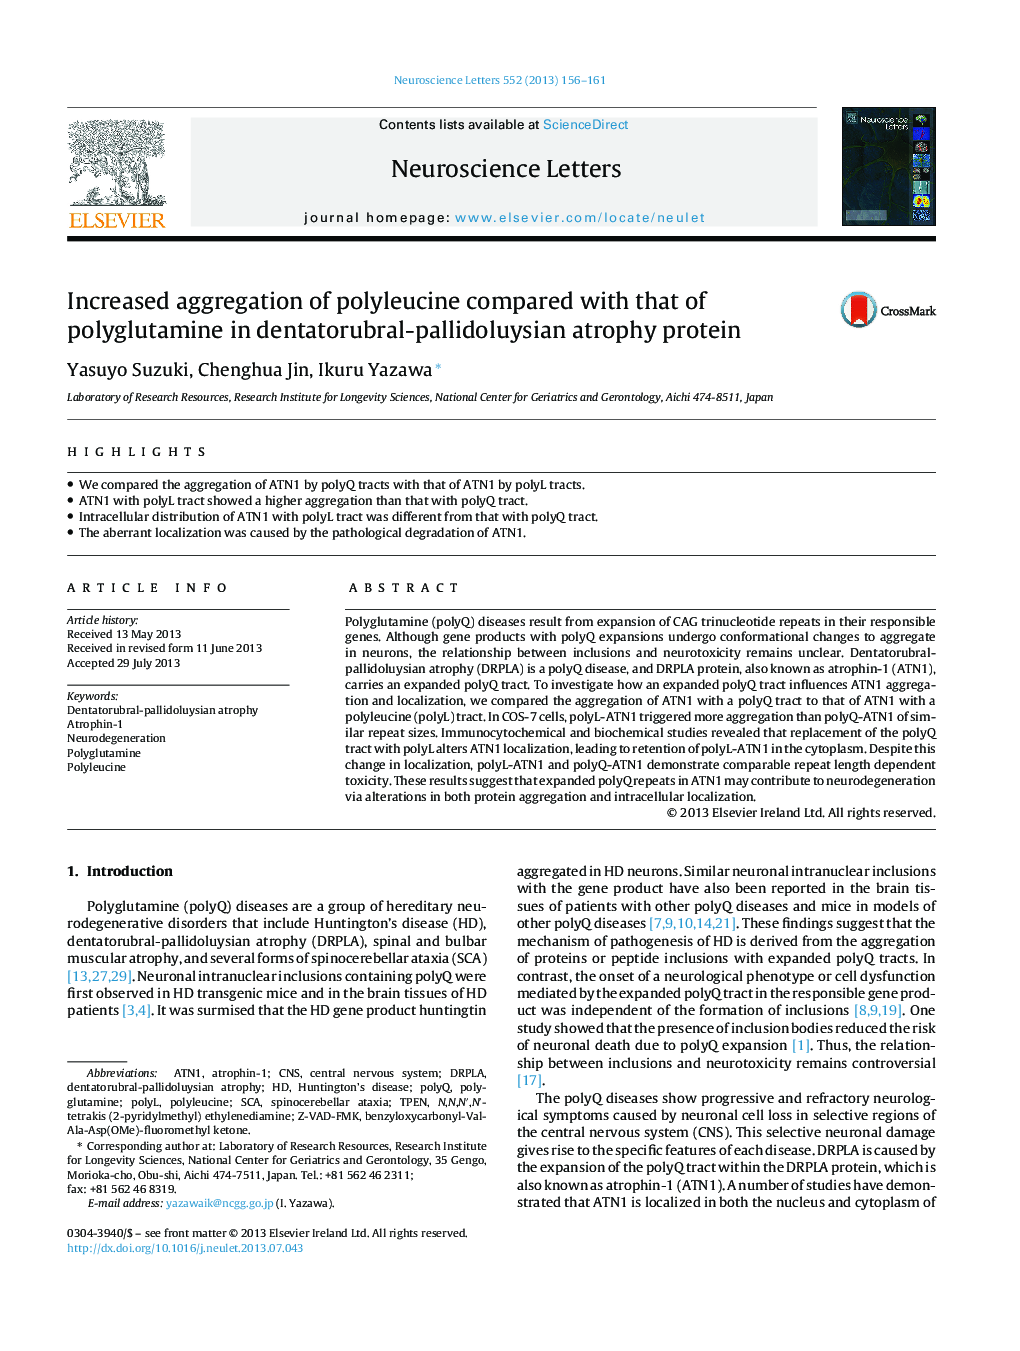 افزایش تجمع پلی اکتین در مقایسه با پلی گلوامین در پروتئین آتروفی دنتاتوروبلرال-پالیدولیویسی 